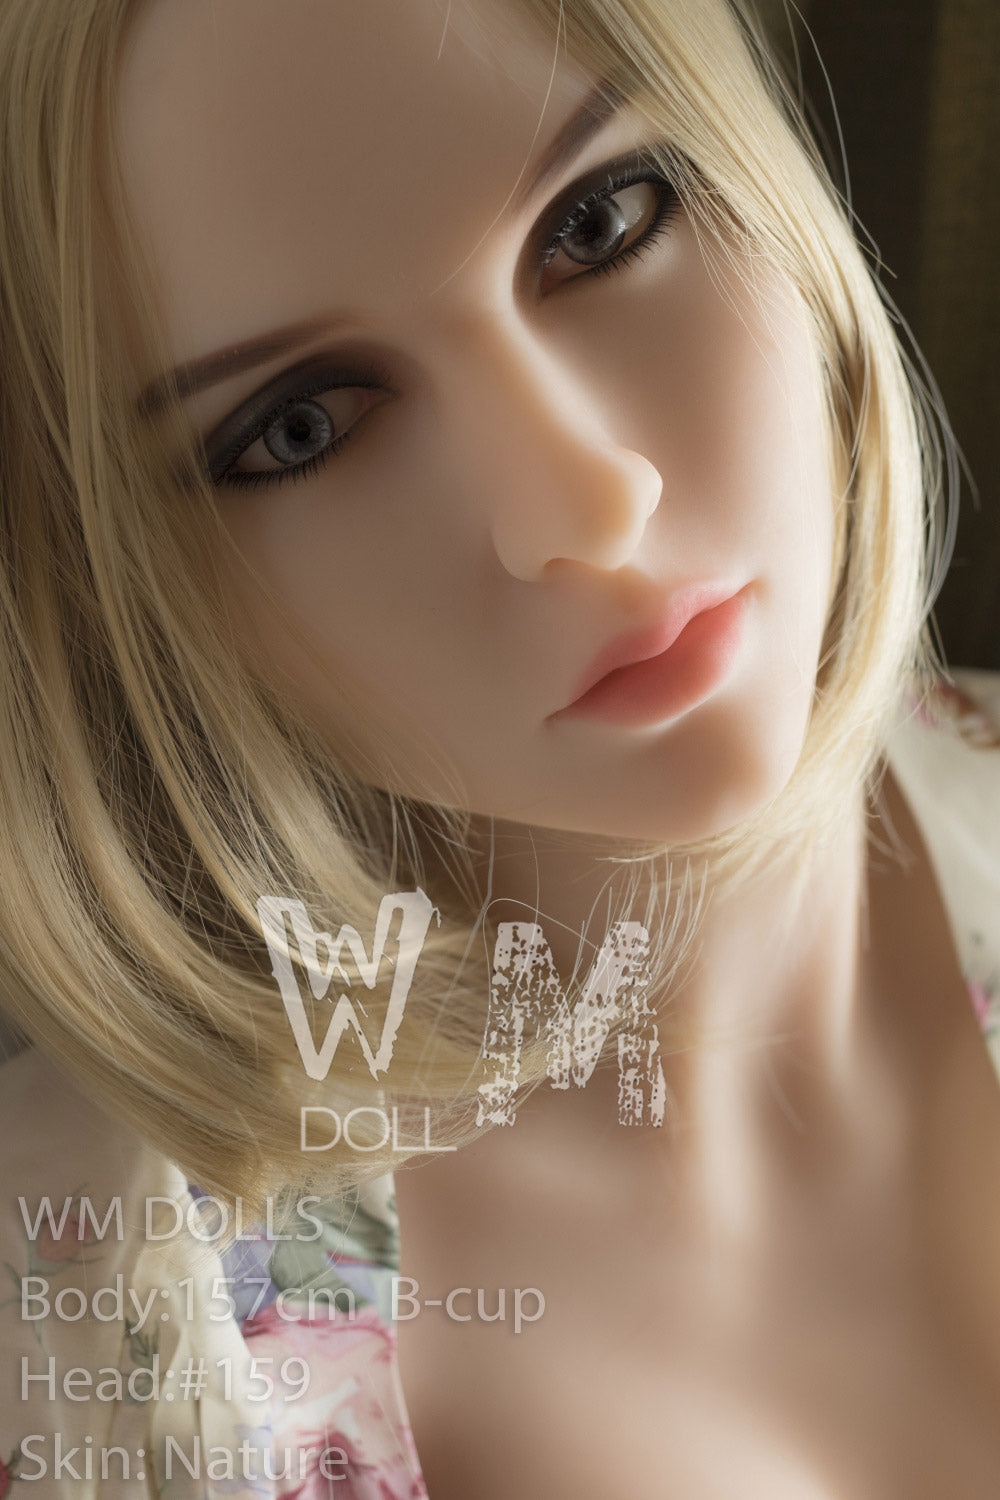 WM DOLL 157 CM B TPE - Eliza | Sex Dolls SG